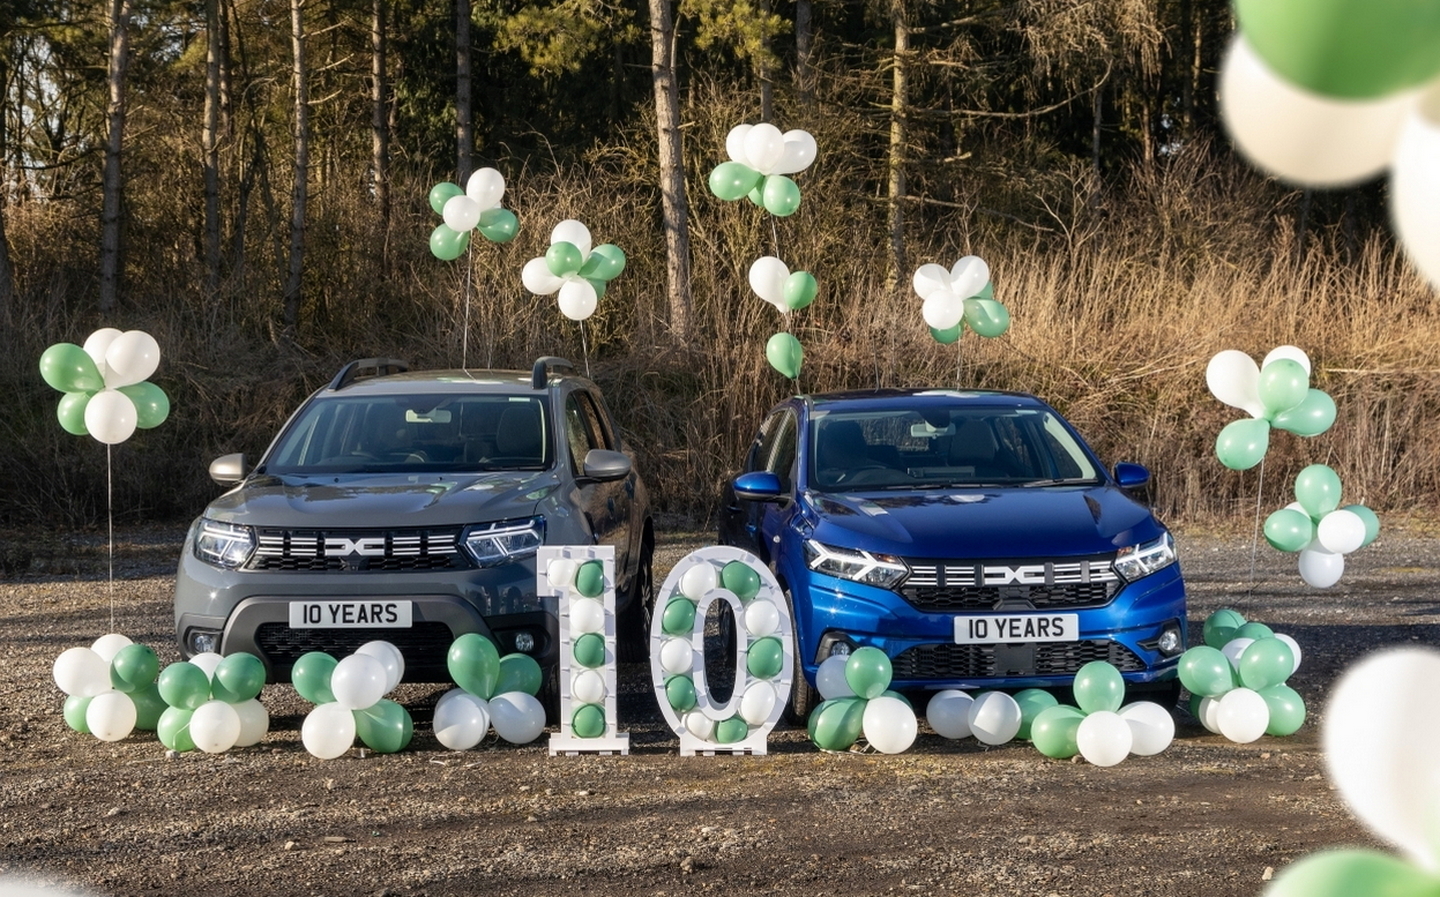 Dacia celebrates 10 years in the UK